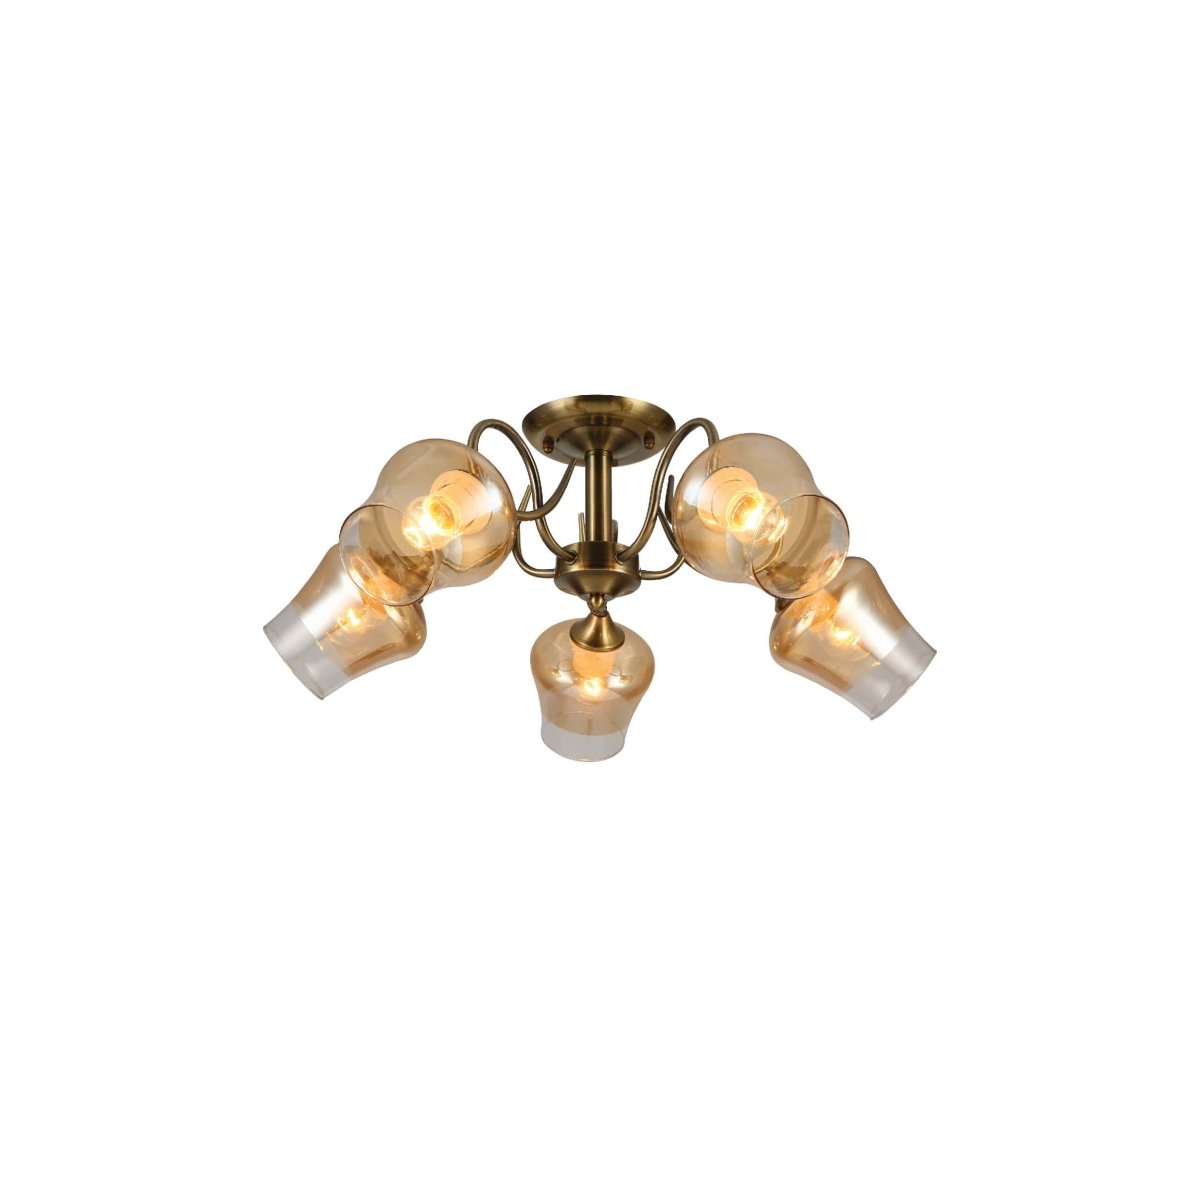 Main image of Amber Bell Glass Antique Brass Metal Semi Flush Ceiling Light 159-17124 | TEKLED 159-17124